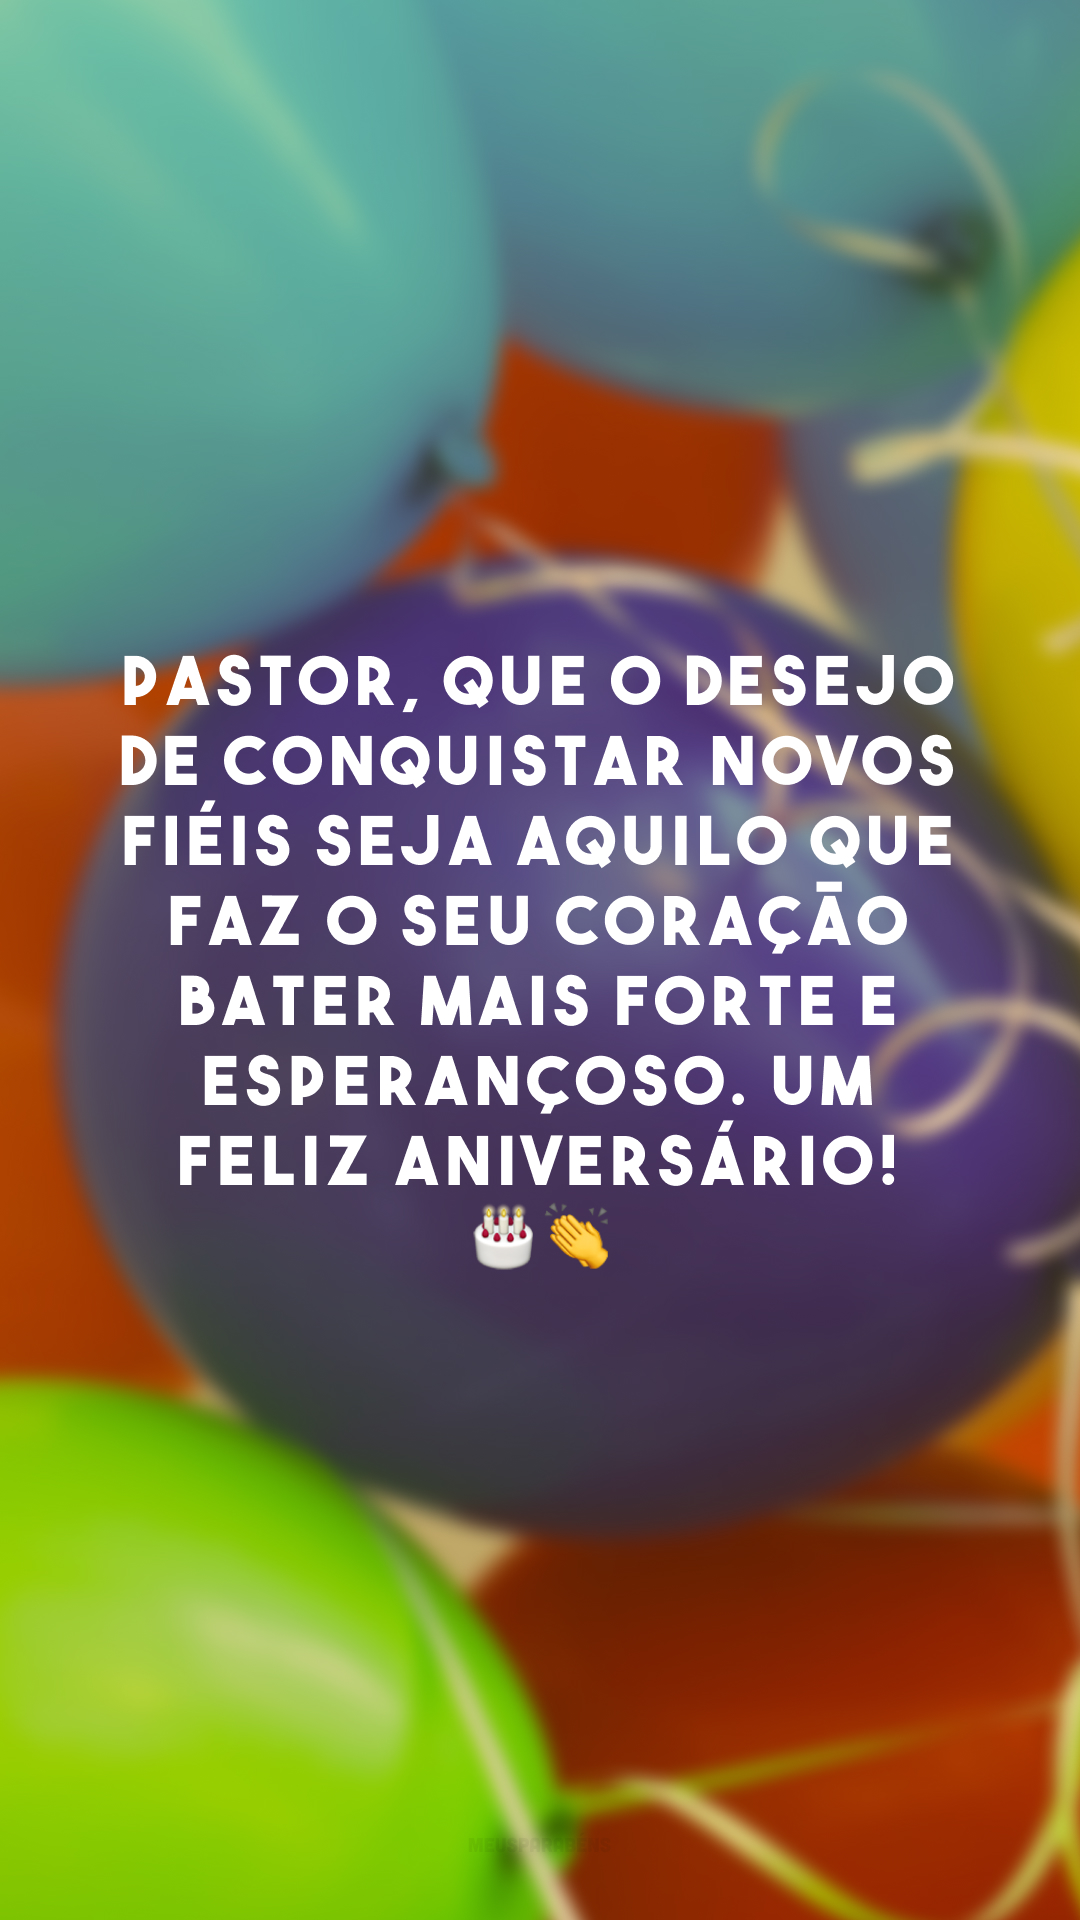 Pastor, que o desejo de conquistar novos fiéis seja aquilo que faz o seu coração bater mais forte e esperançoso. Um feliz aniversário! 🎂👏